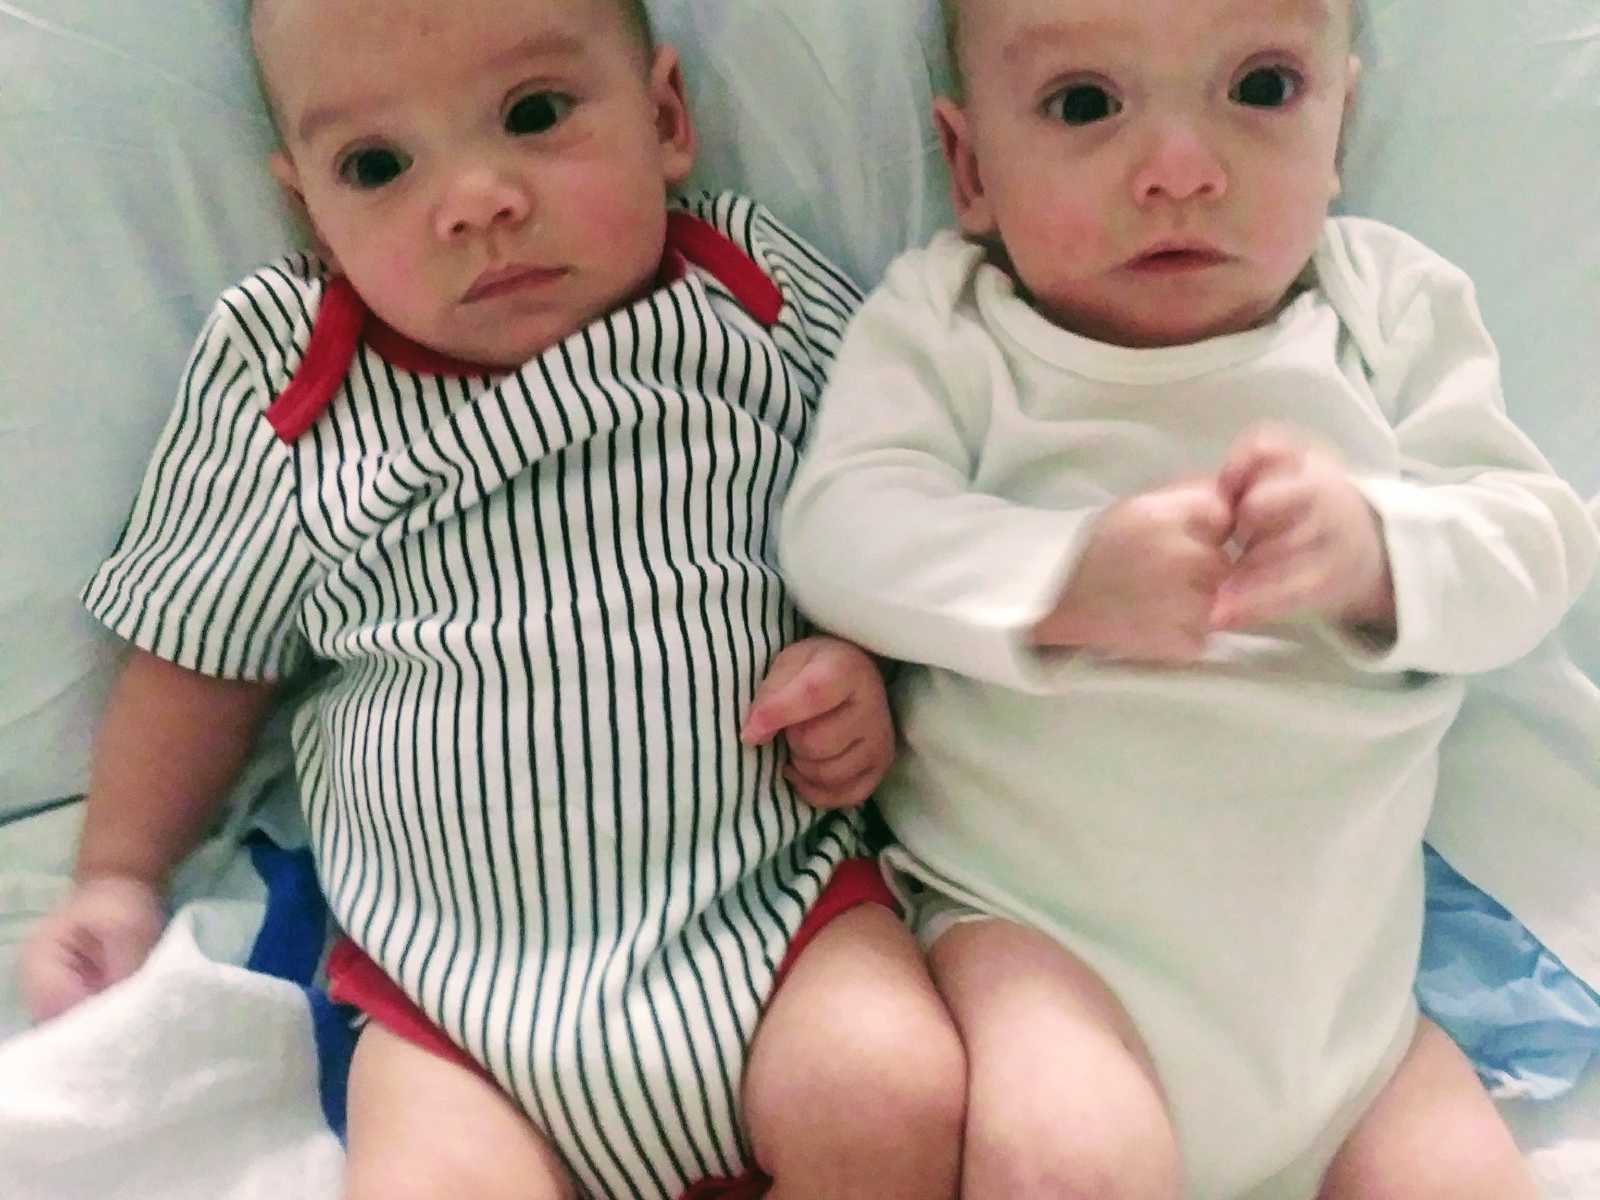 Zwillinge benötigen eine wichtige OP, um zu überleben – da überrascht ihr 4 jähriger Bruder Eltern und Ärzte gleichermaßen